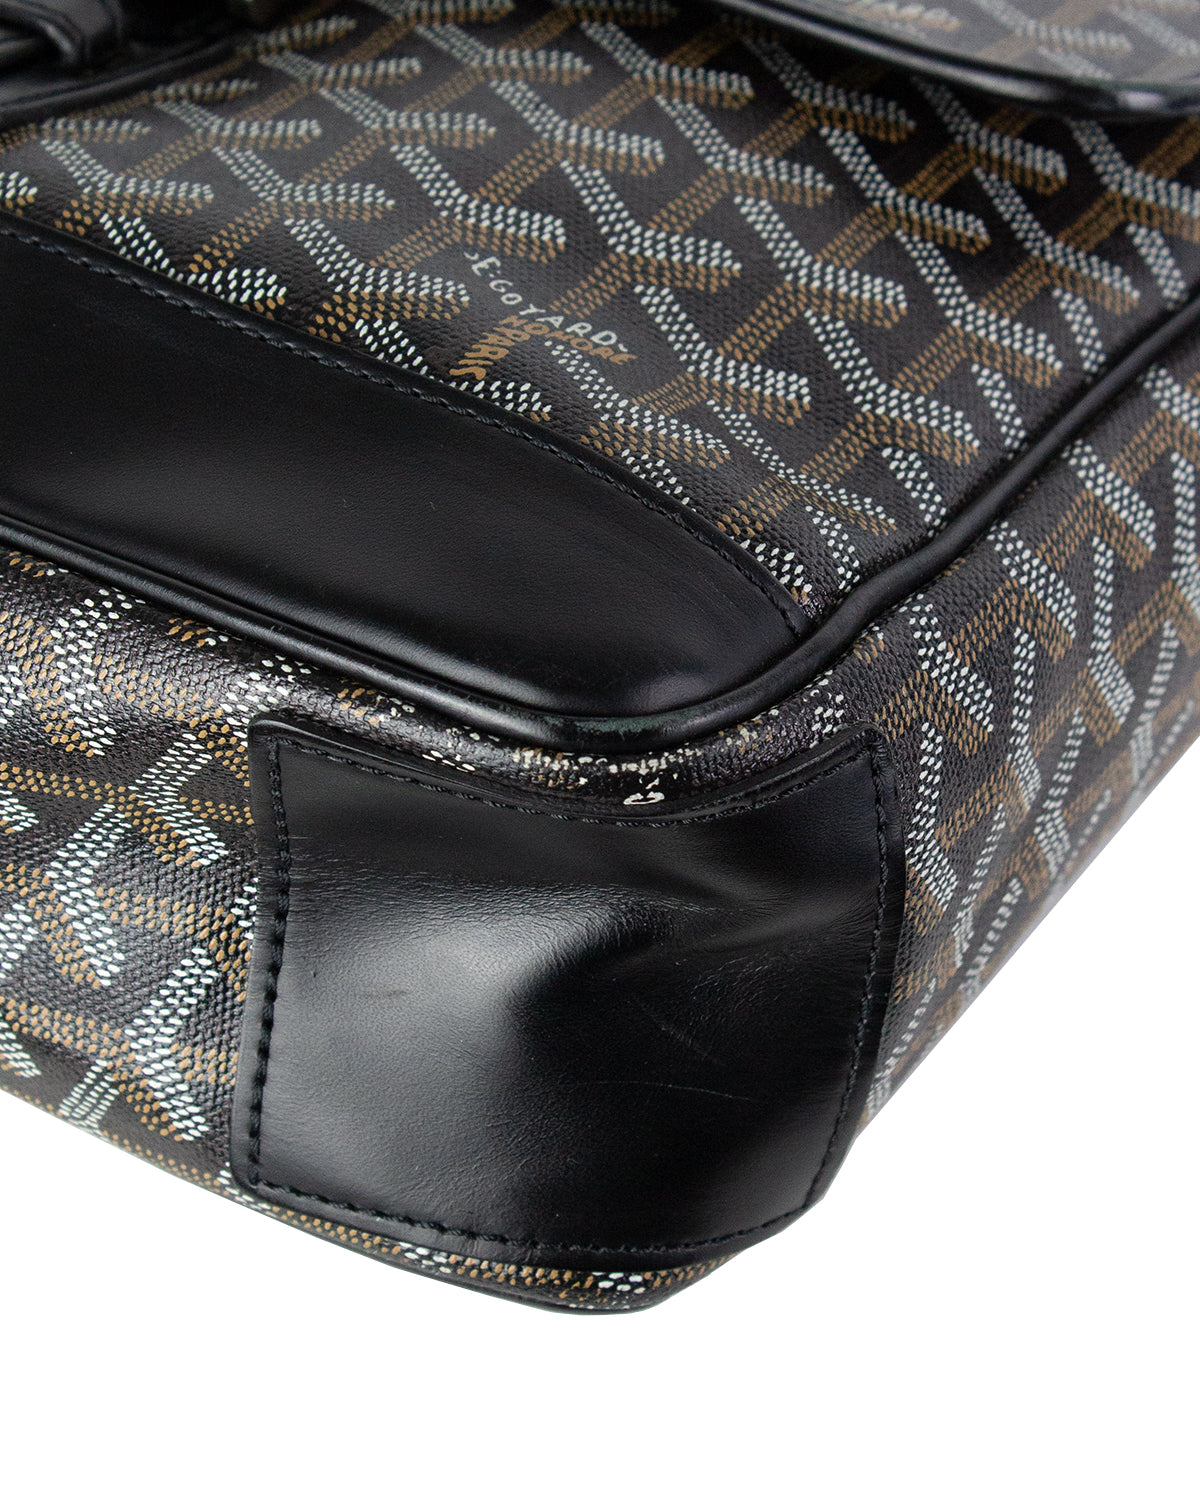 GOYARD GRAND BLEU MM PVC Leather Black Shoulder Bag Unisex Used F/S from  Japan